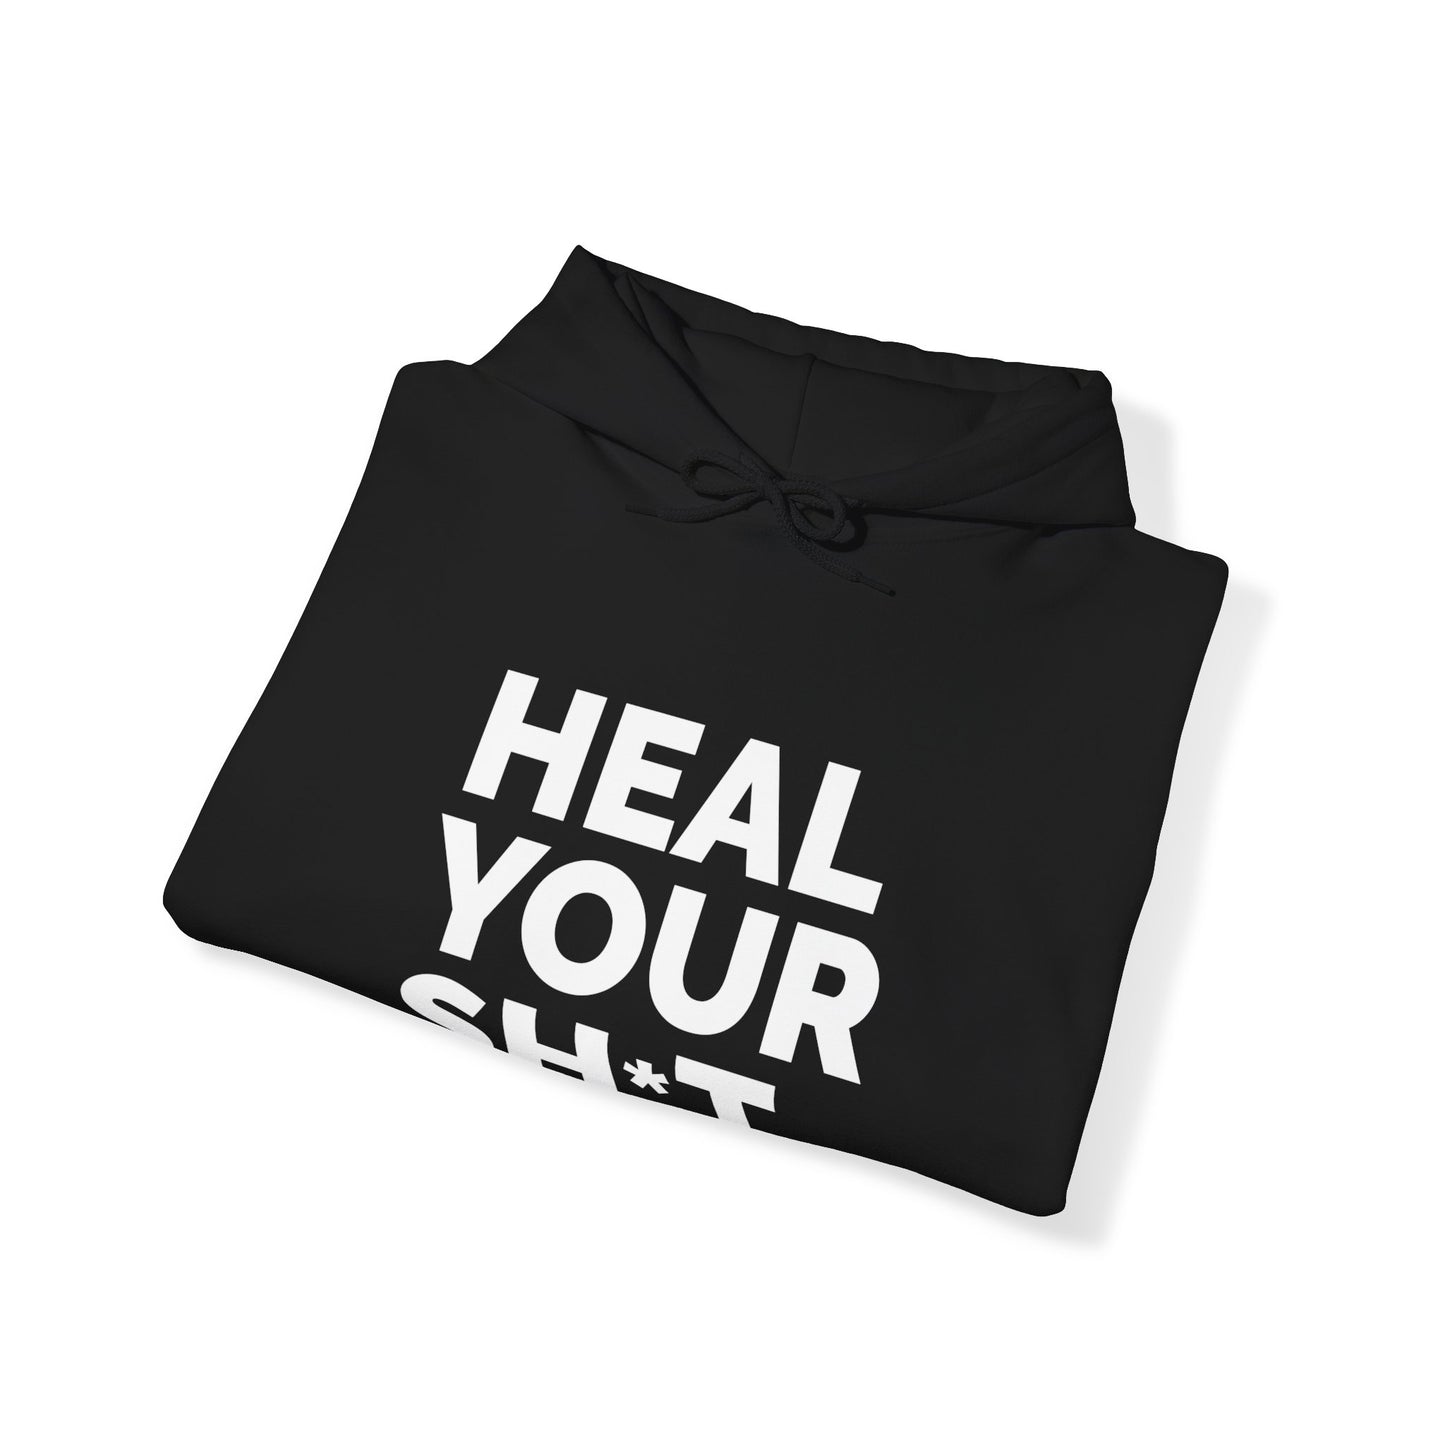 Heal Your Sh*t Unisex Eco-Luxury Hooded Sweatshirt